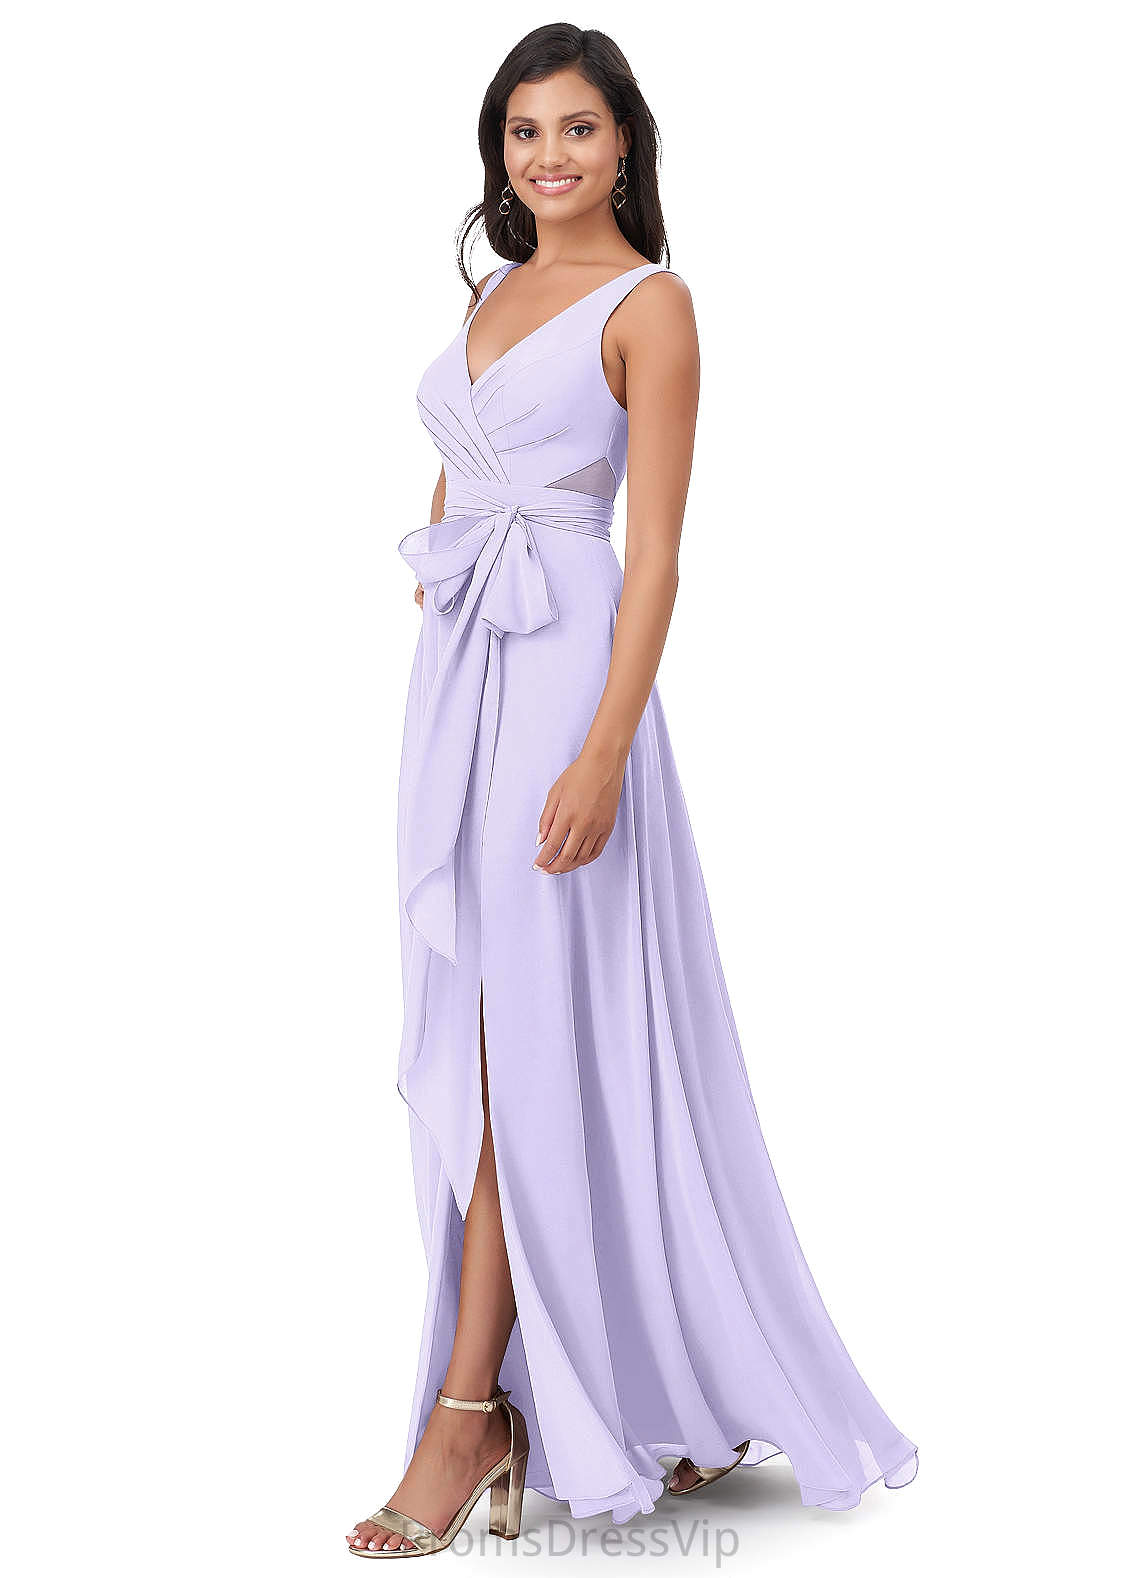 Madeline High Low Sleeveless A-Line/Princess V-Neck Empire Waist Bridesmaid Dresses